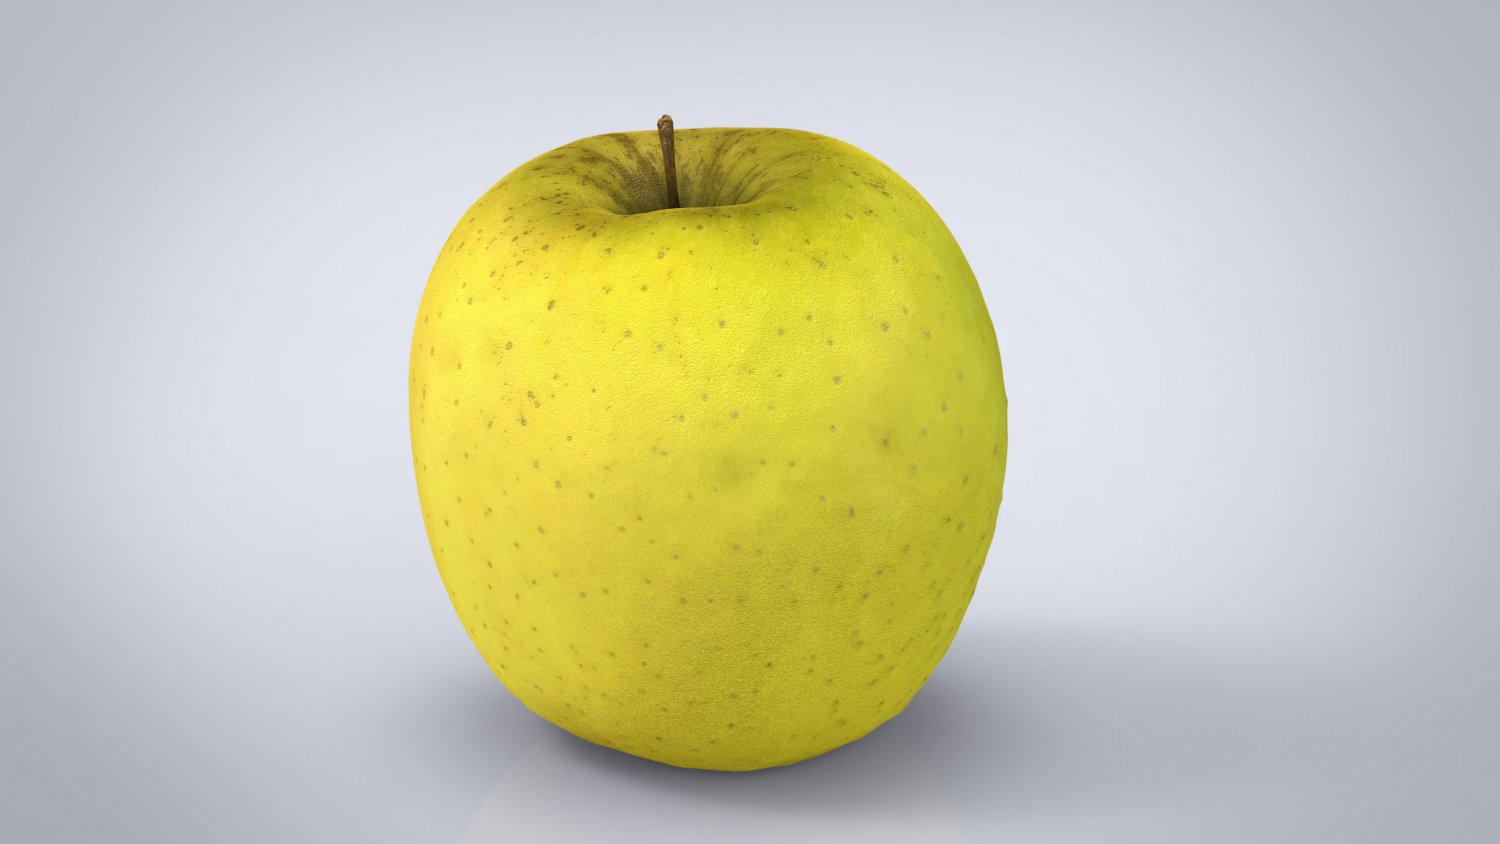 Включи 3 яблока. Модель яблока. Apple 3d model. Яблоко 3д модель серого цвета. 3d модель желтая.